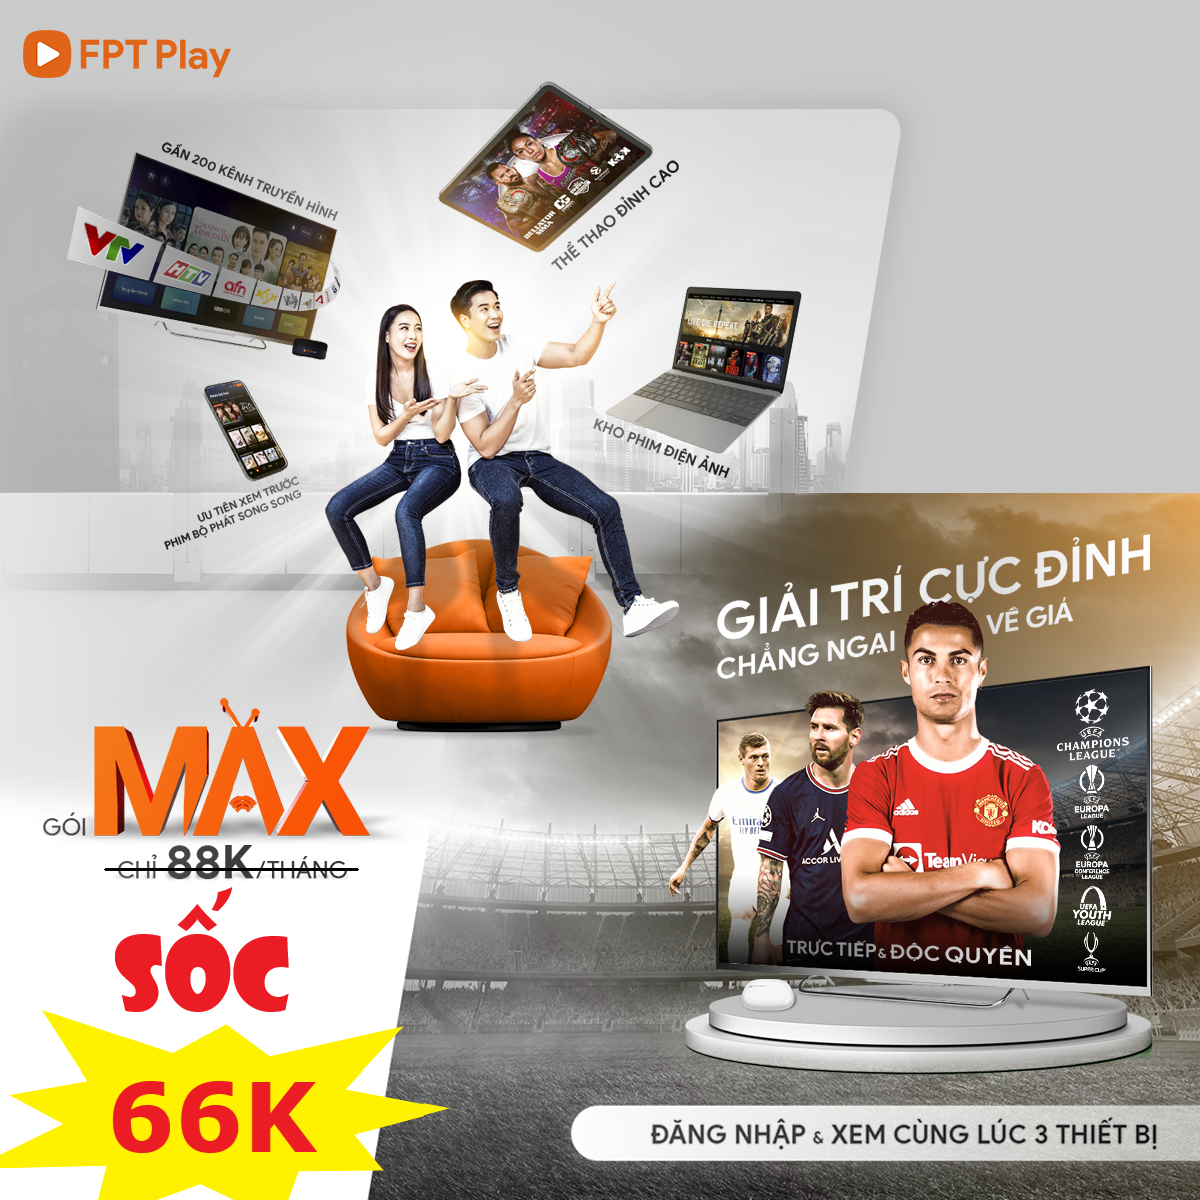 Gói Max FPT Play dịch vụ xem truyền hình chỉ với 88.000đ/tháng 15